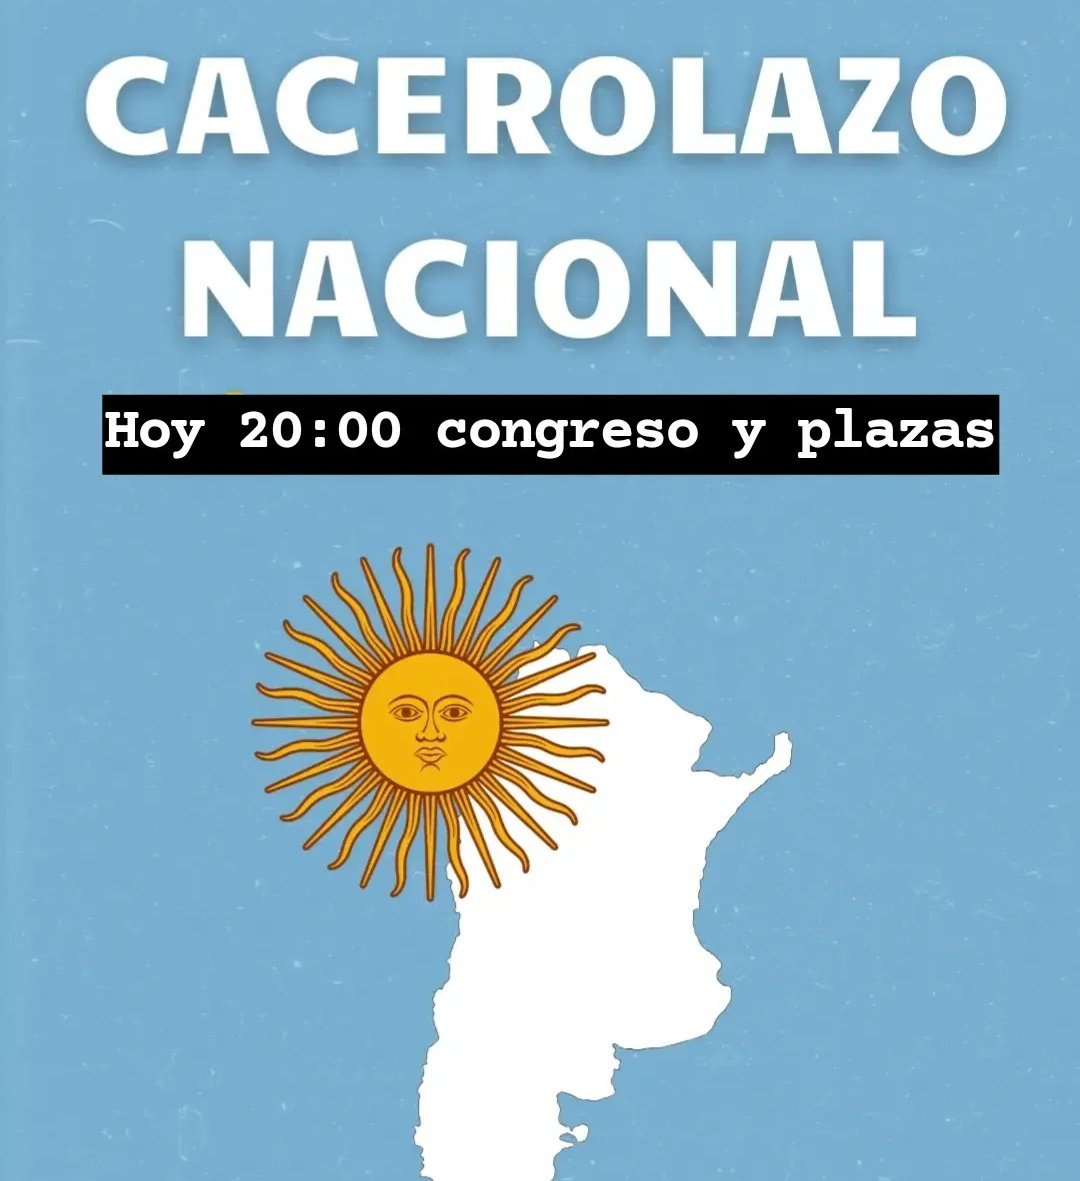 Hoy 20hs gran #Cacerolazo Nacional, en todas las esquinas, balcones y plazas del país, contra el Gobierno criminal de Milei
Dale RETUIT
#LaCastaErasVos